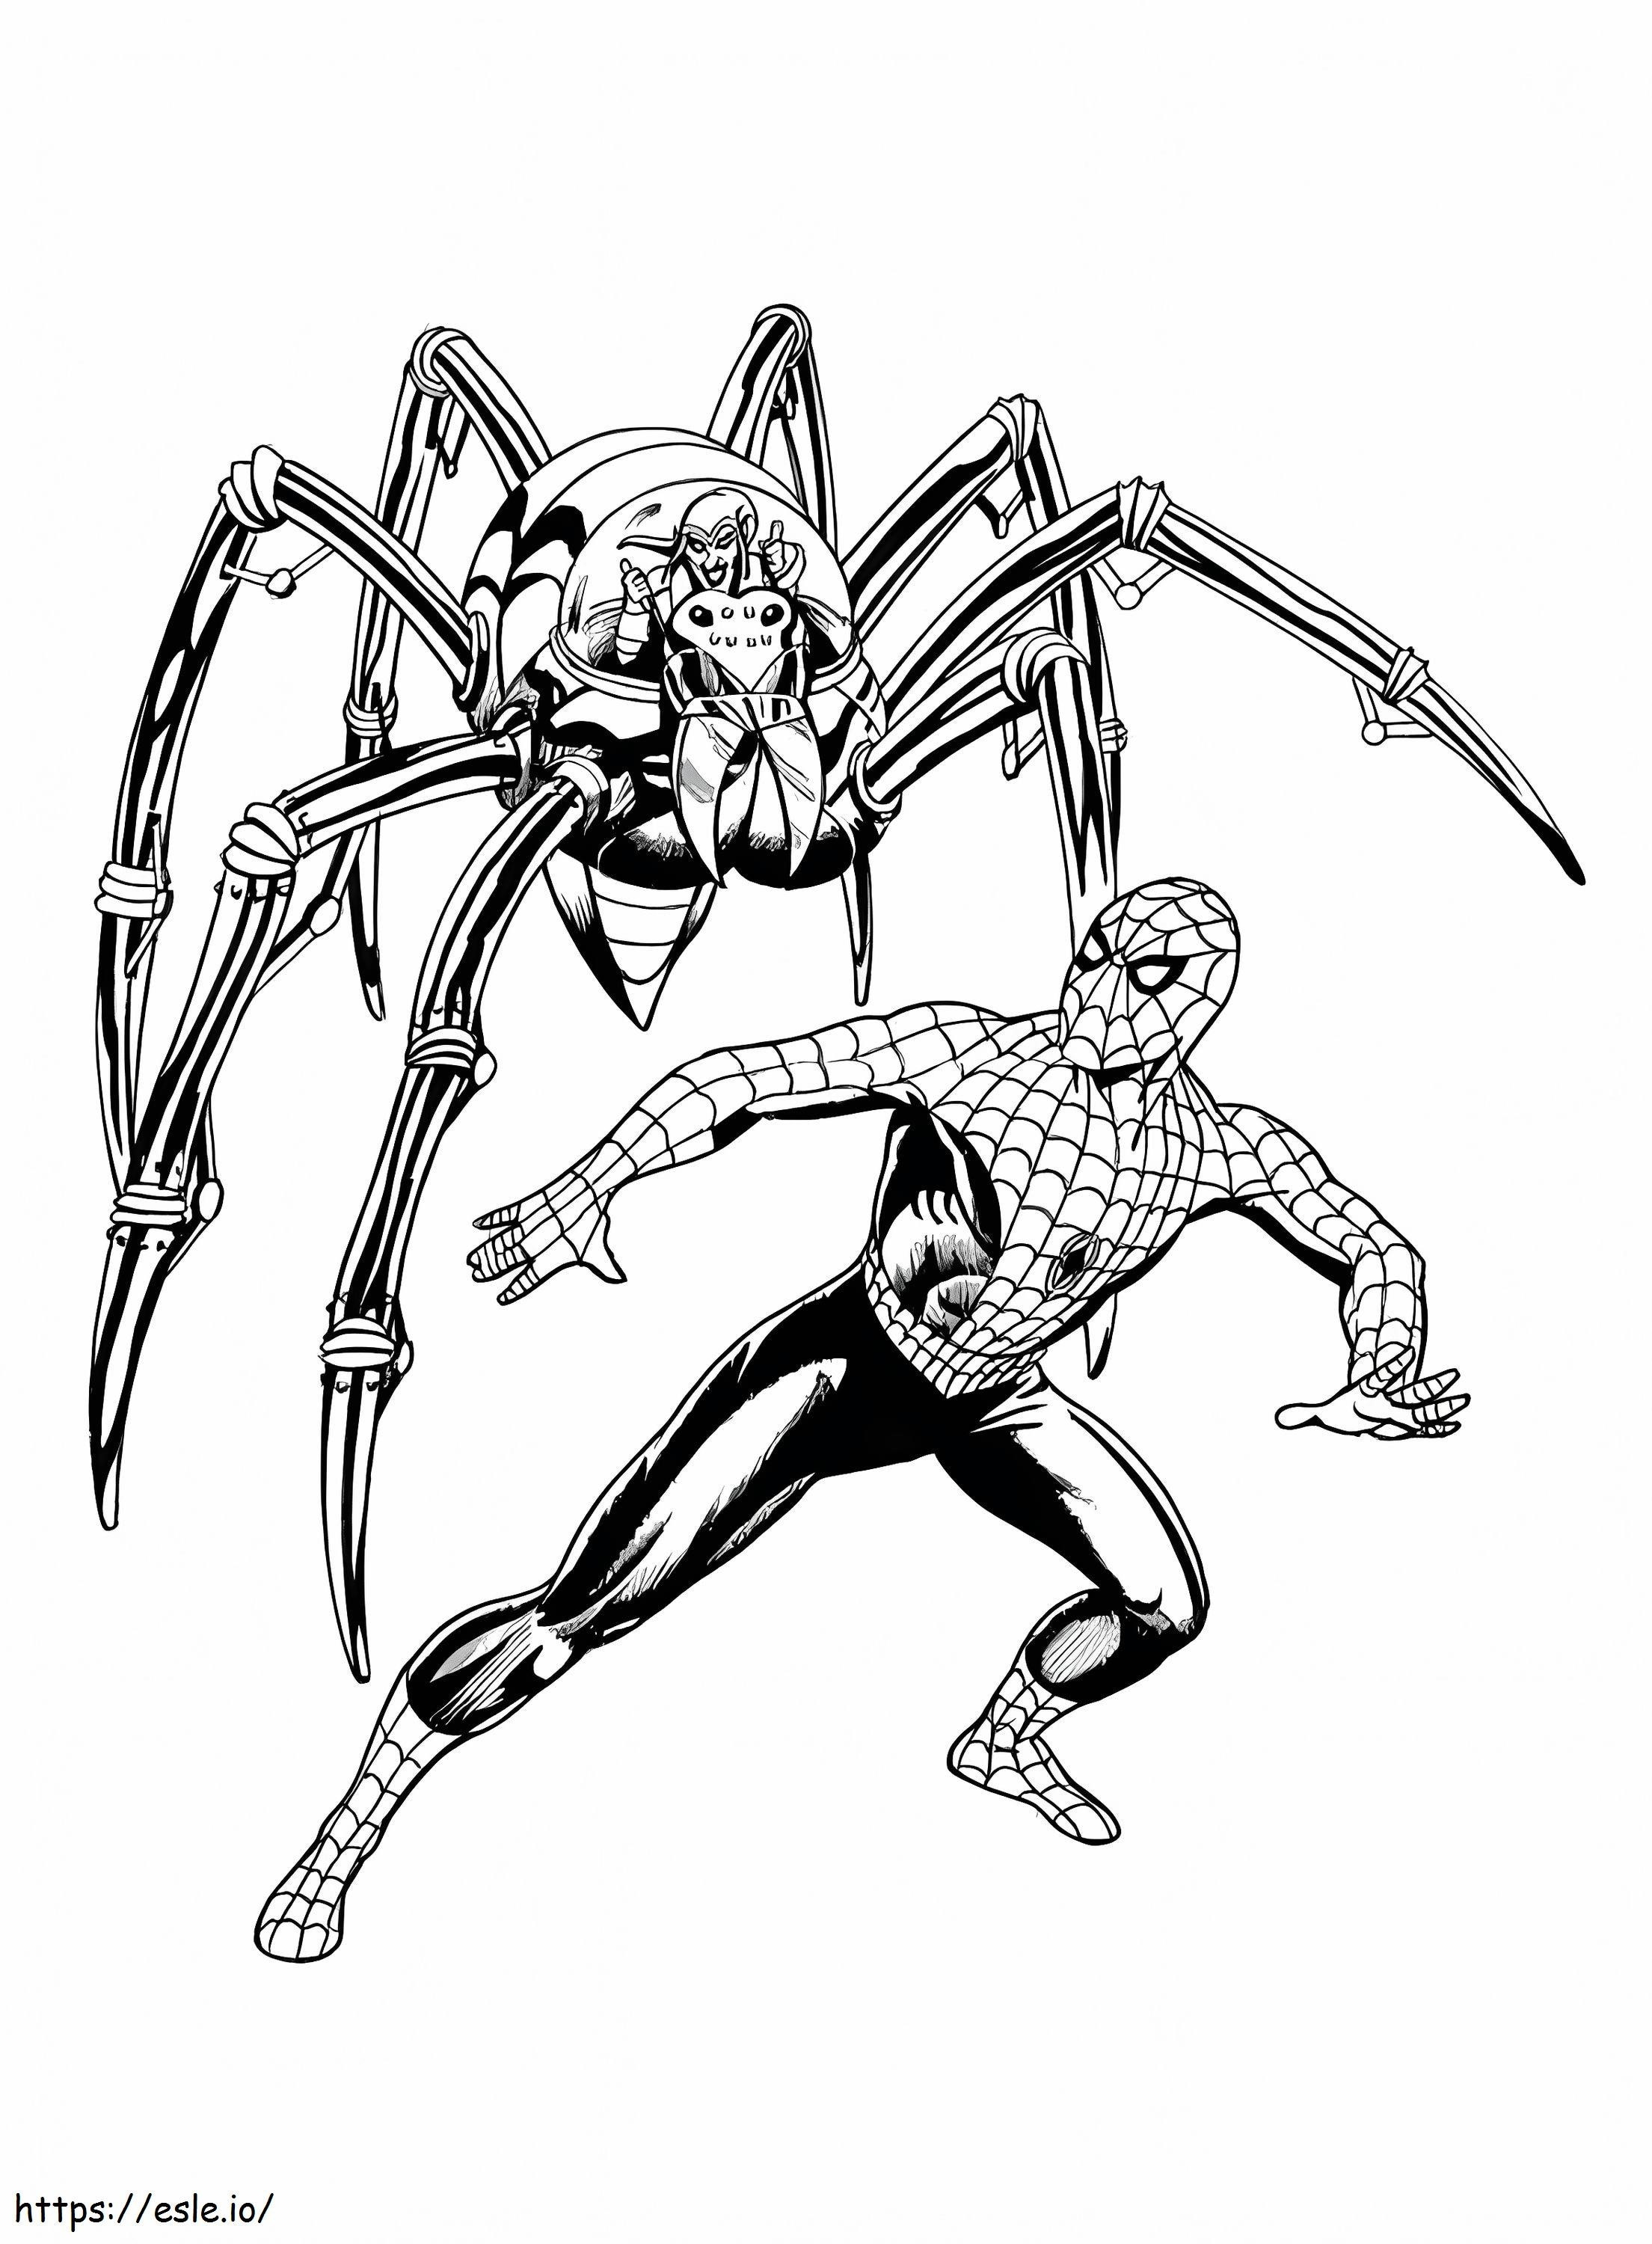 Örümcek Adam ve Örümcek boyama